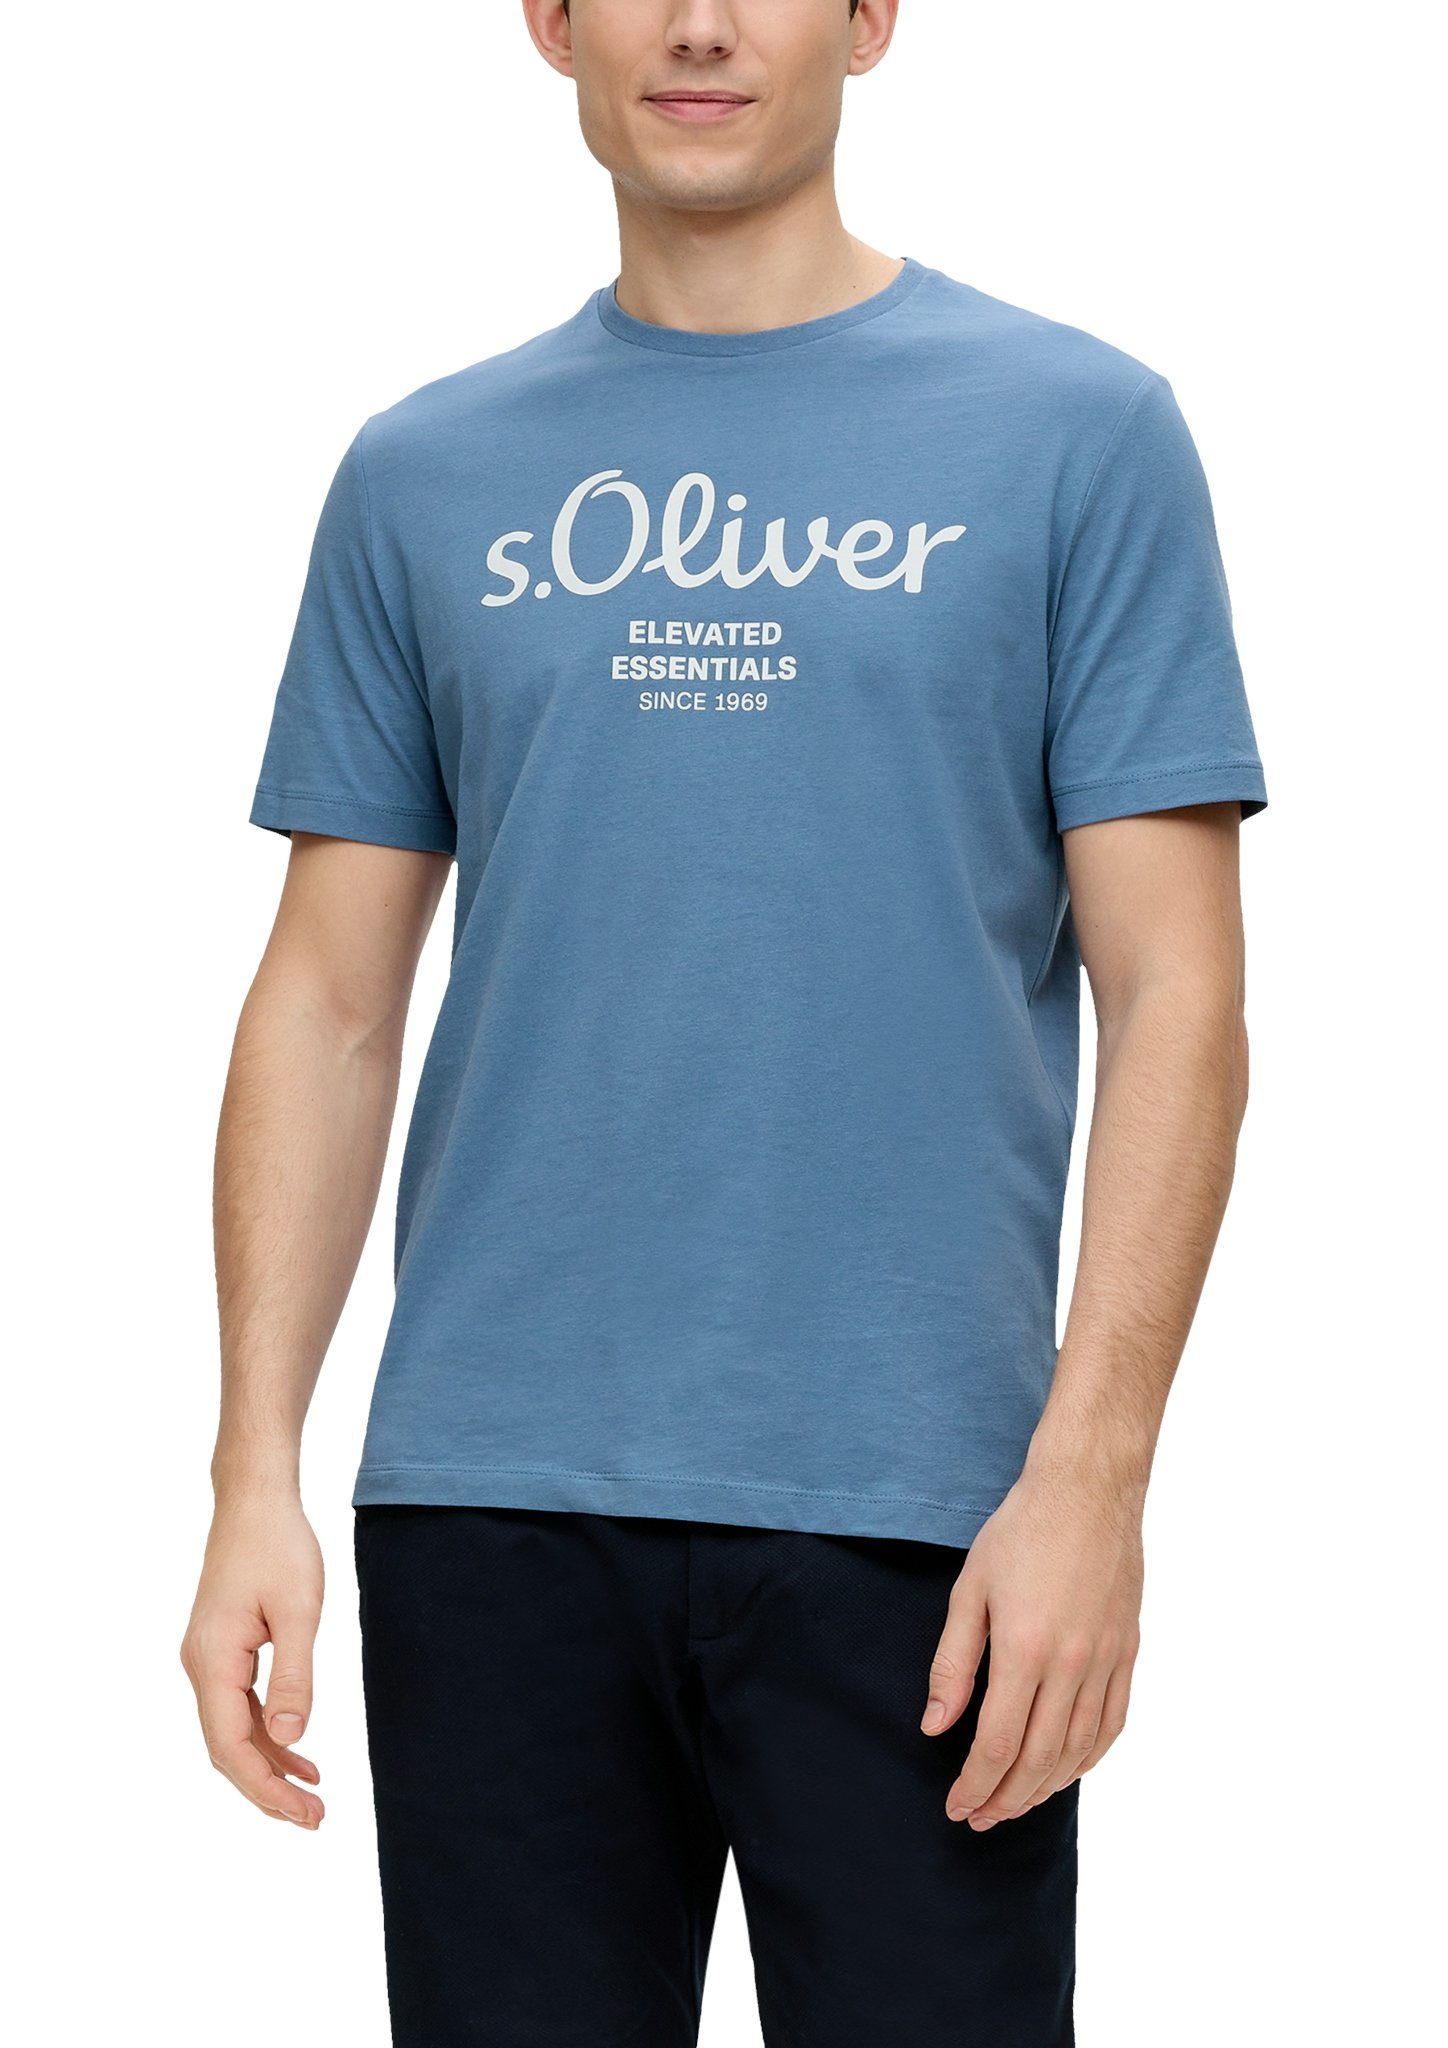 Gestreifte s.Oliver Shirts für Damen online kaufen | OTTO